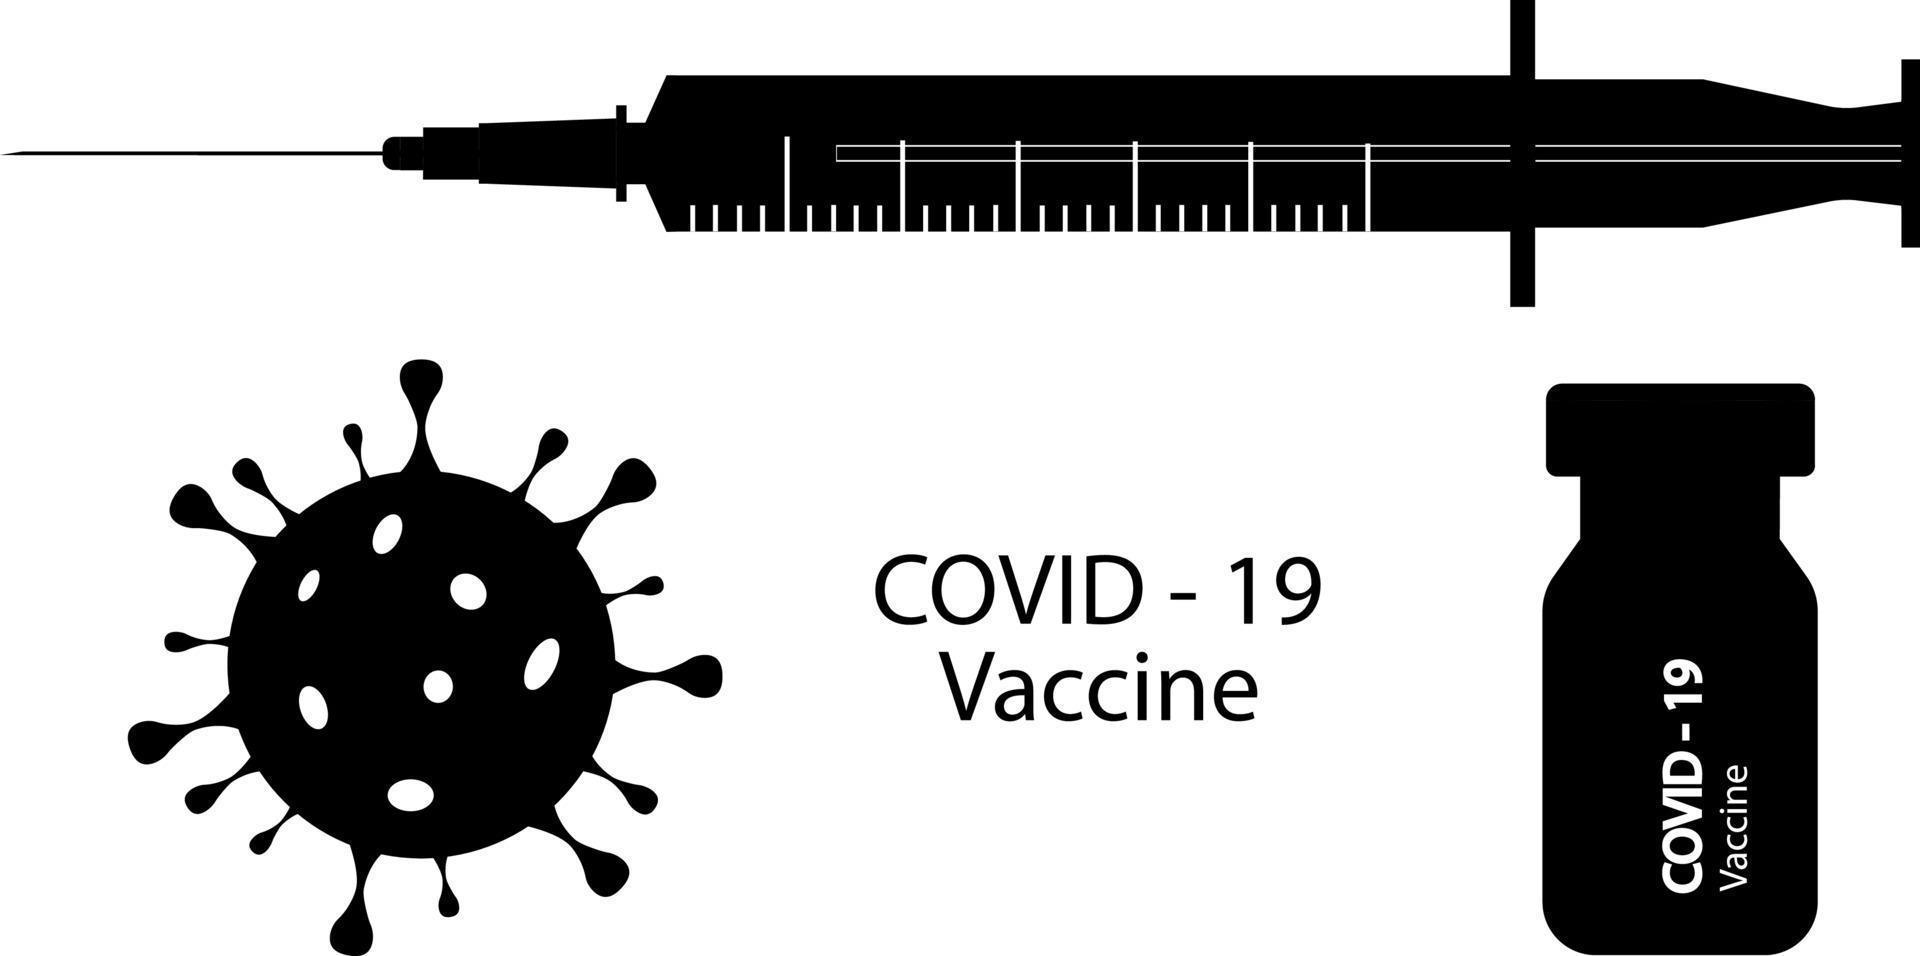 covid-19 coronavirusvaccin. plat pictogrammen, zwarte silhouetten van een vaccin, een spuit. coronavirus. zwarte silhouetten op een witte achtergrond. vector